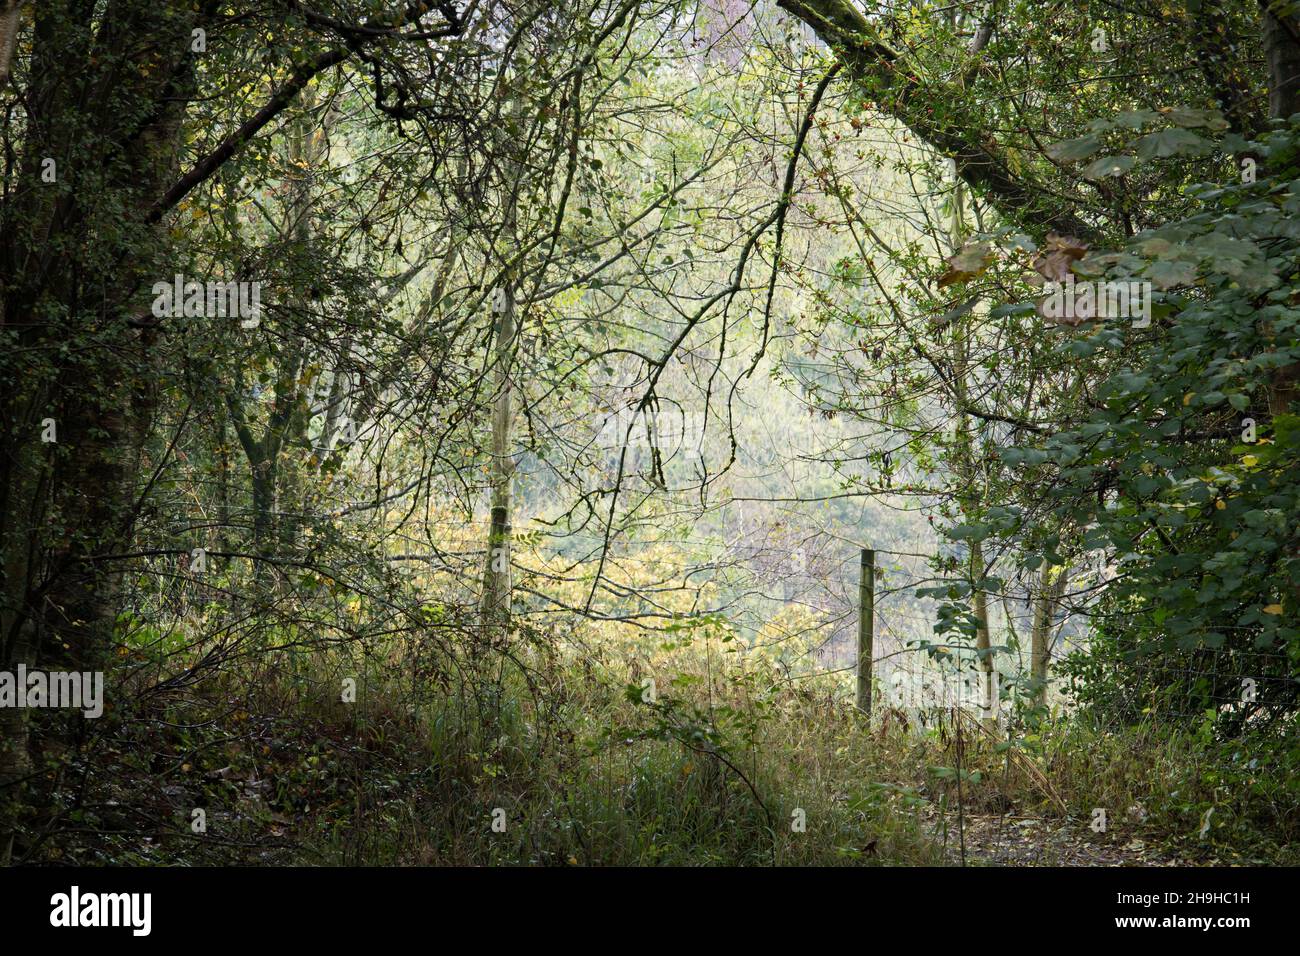 No hay manera de atravesar el lejano paisaje de nebly, en un denso bosque rodeado por una valla de alambre Foto de stock